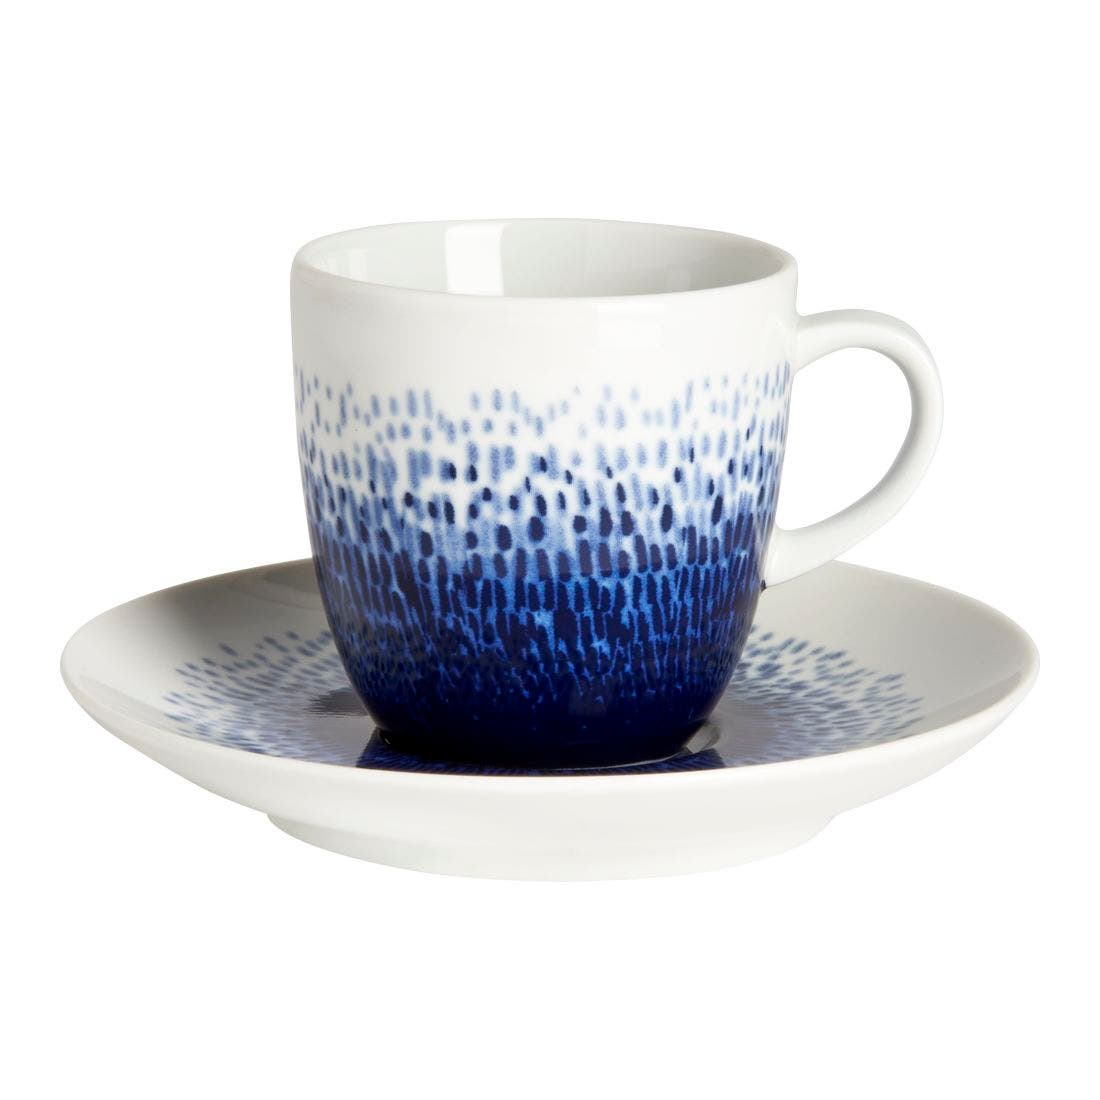 25023677-maine-tableware-kitchenware-cup-mug-teapot-01